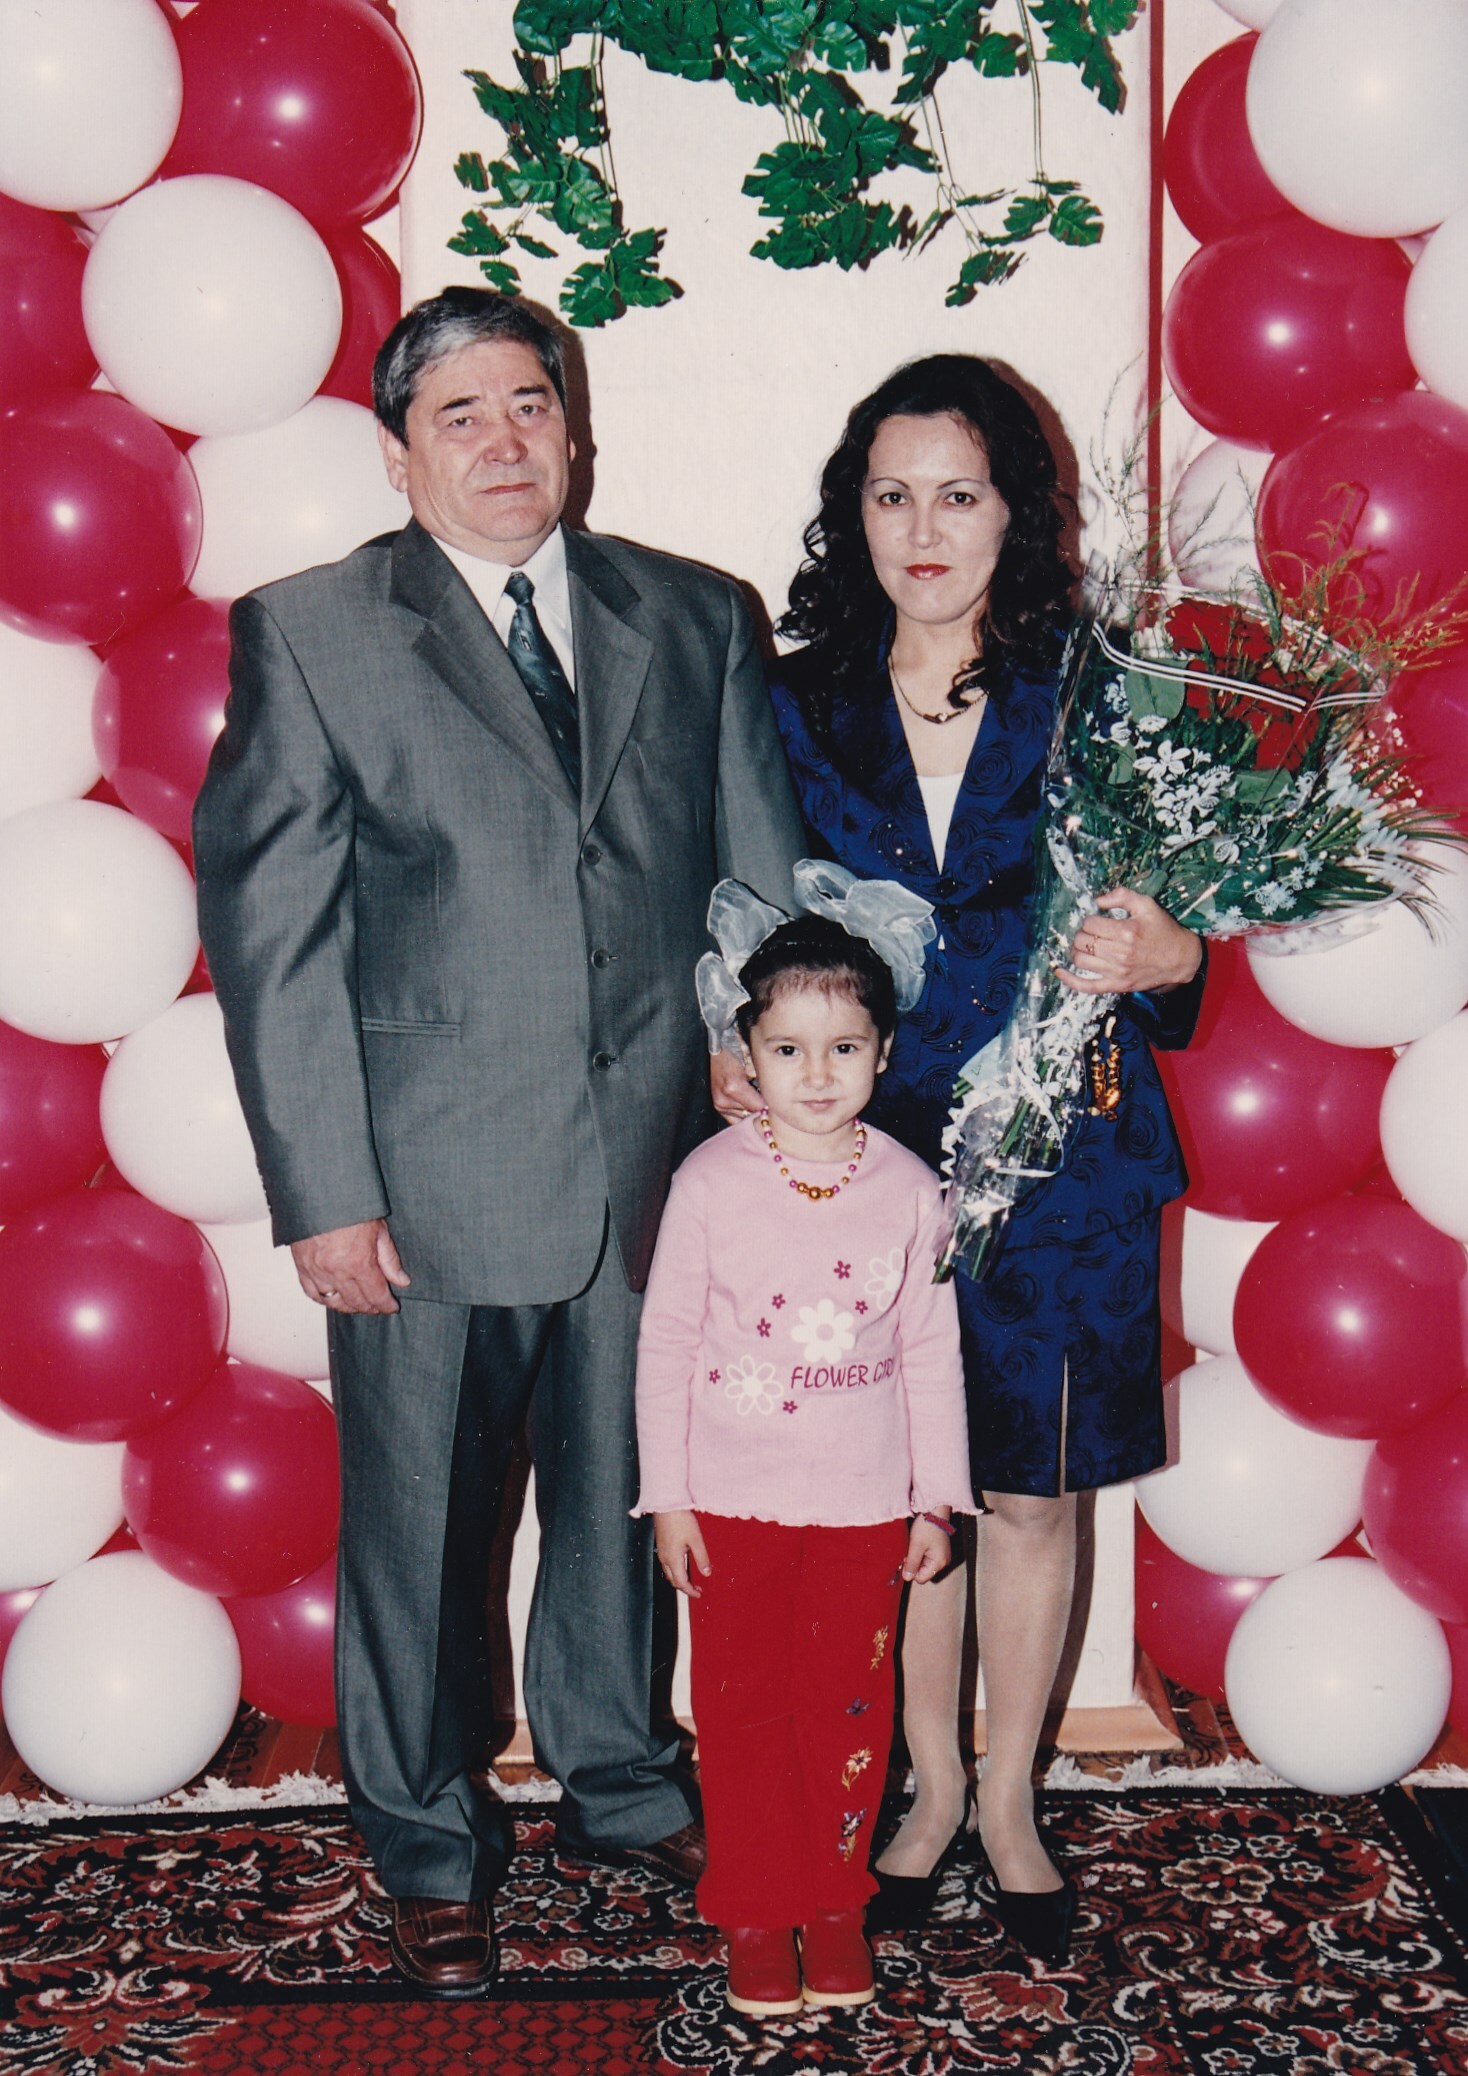 Ғәлим Хисамов ҡатыны Лилиә,  ҡыҙы Ғәлиә менән. 2004 й.